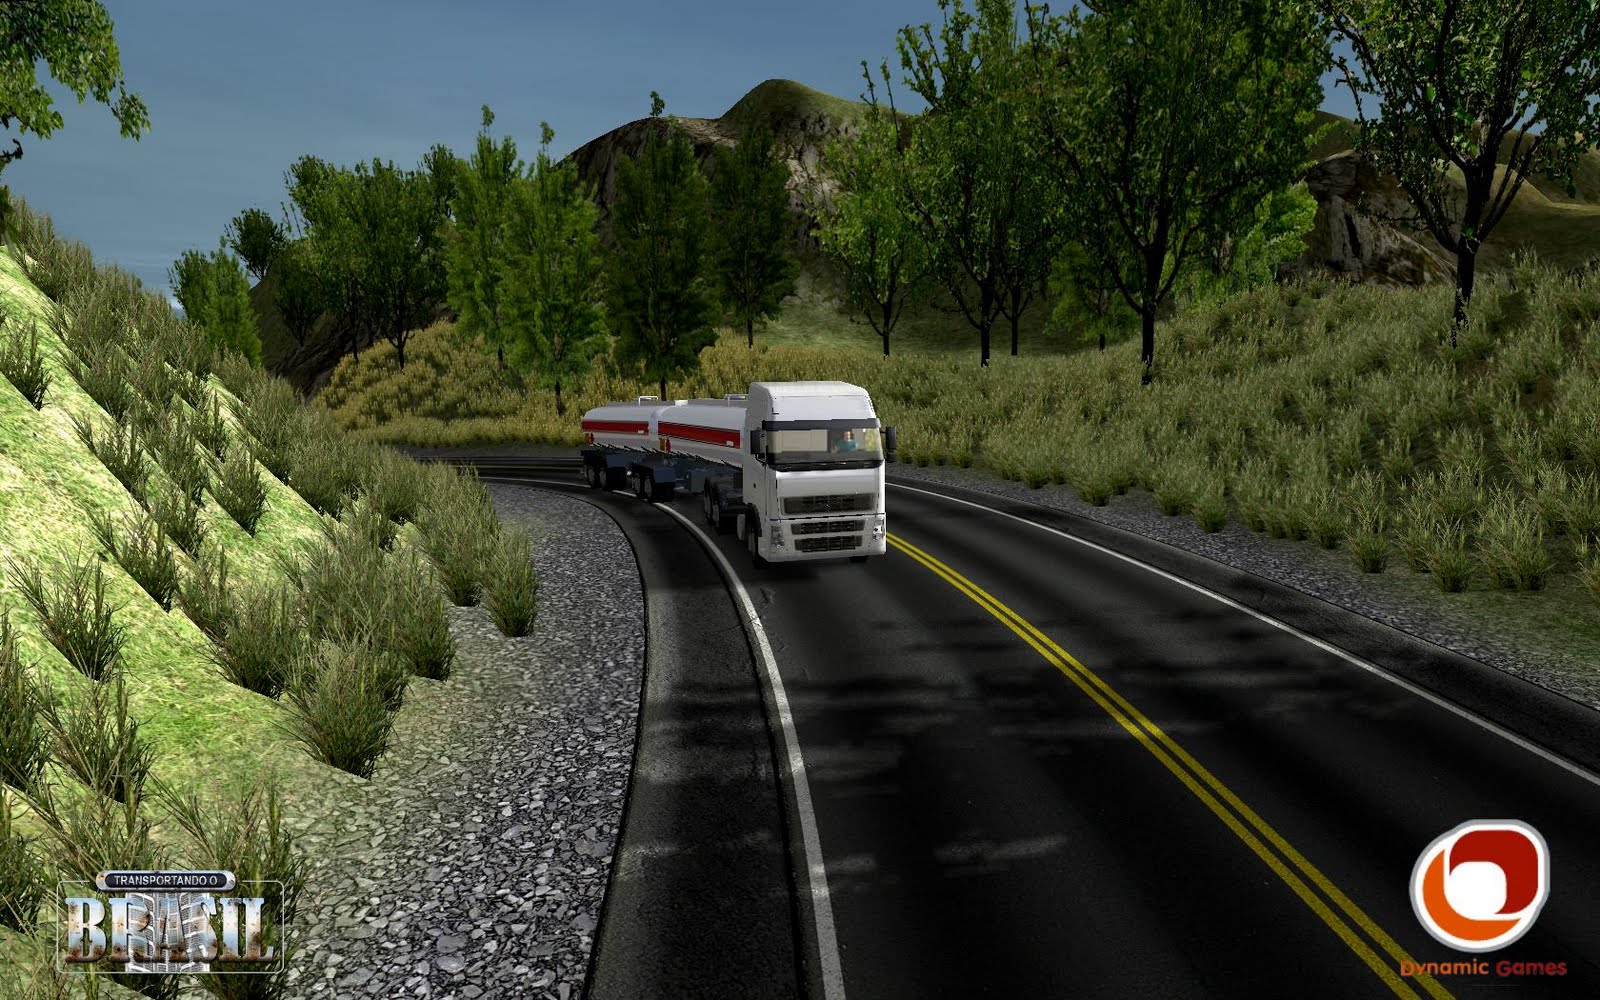 Brasil caminhôes : Simulador de caminhão 100% brasileiro é lançado